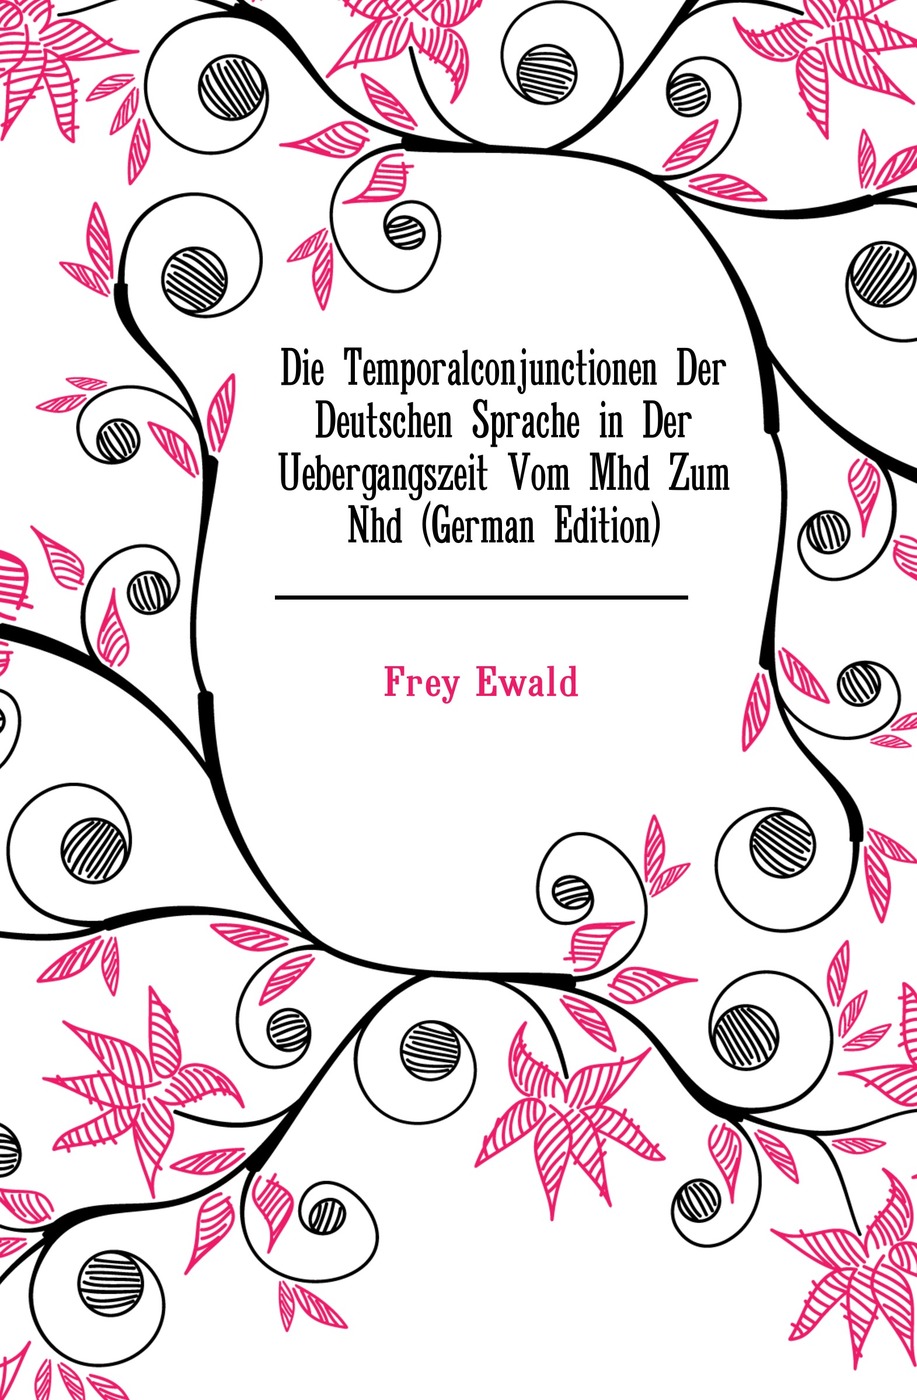 Die Temporalconjunctionen Der Deutschen Sprache in Der Uebergangszeit Vom Mhd Zum Nhd (German Edition)